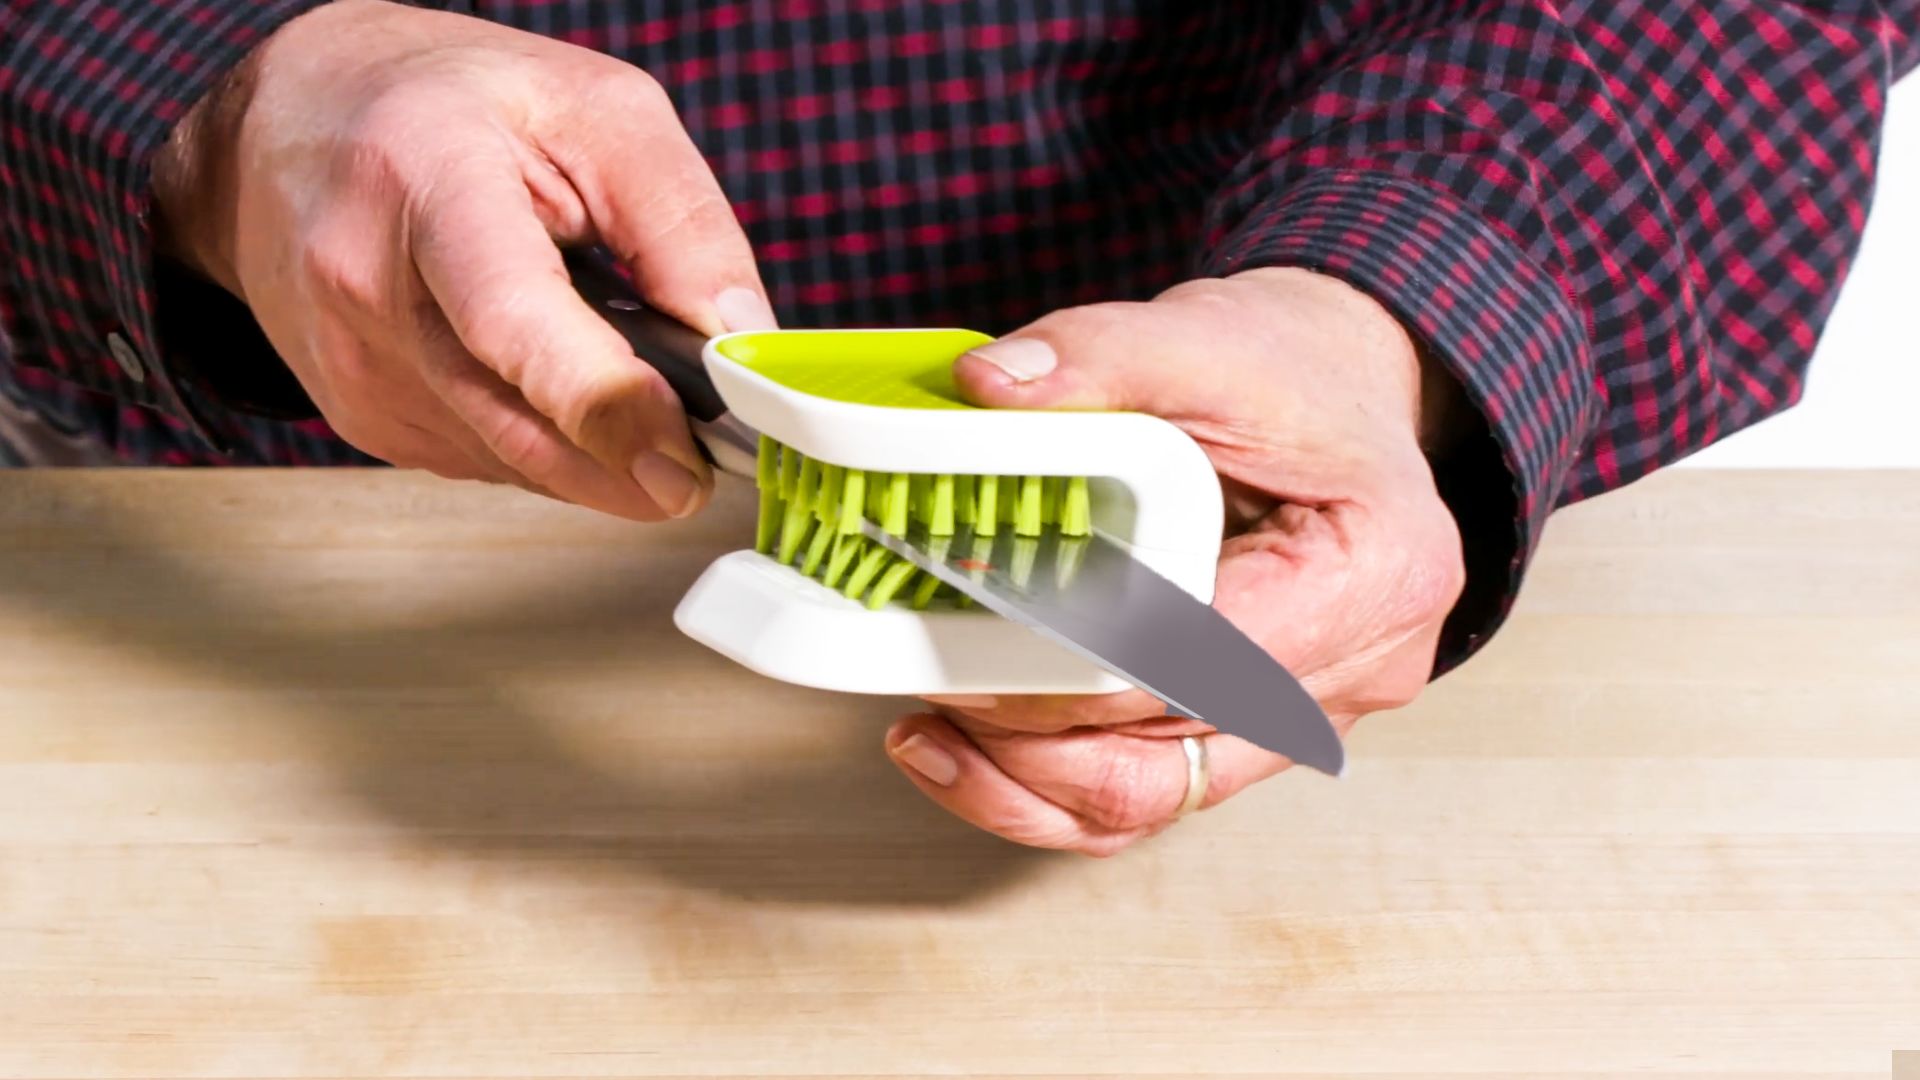 720 Best Kitchen Gadgets ideas in 2023  kitchen gadgets, gadgets, gadgets  kitchen cooking